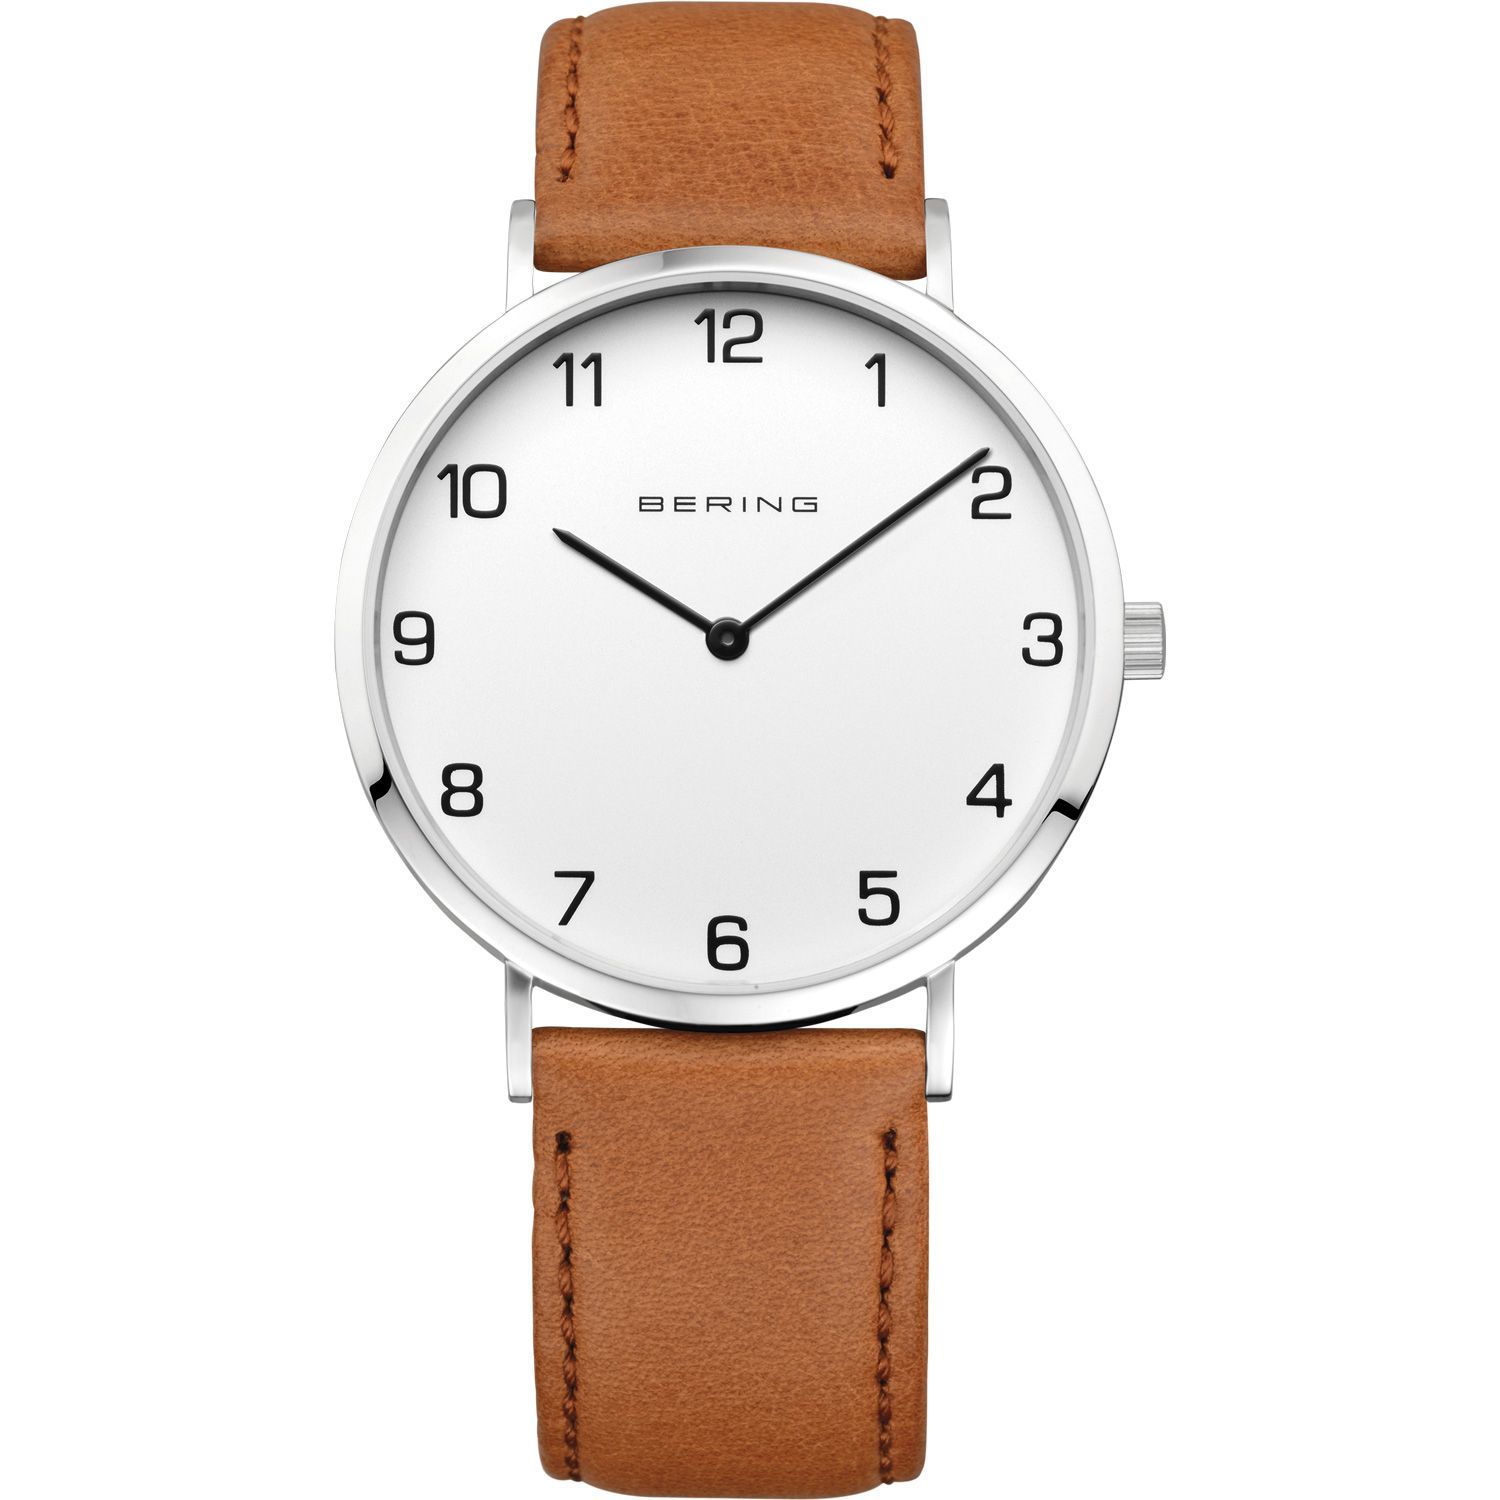   Staviator Bering 13940-504 - мужские наручные часы из коллекции Classic